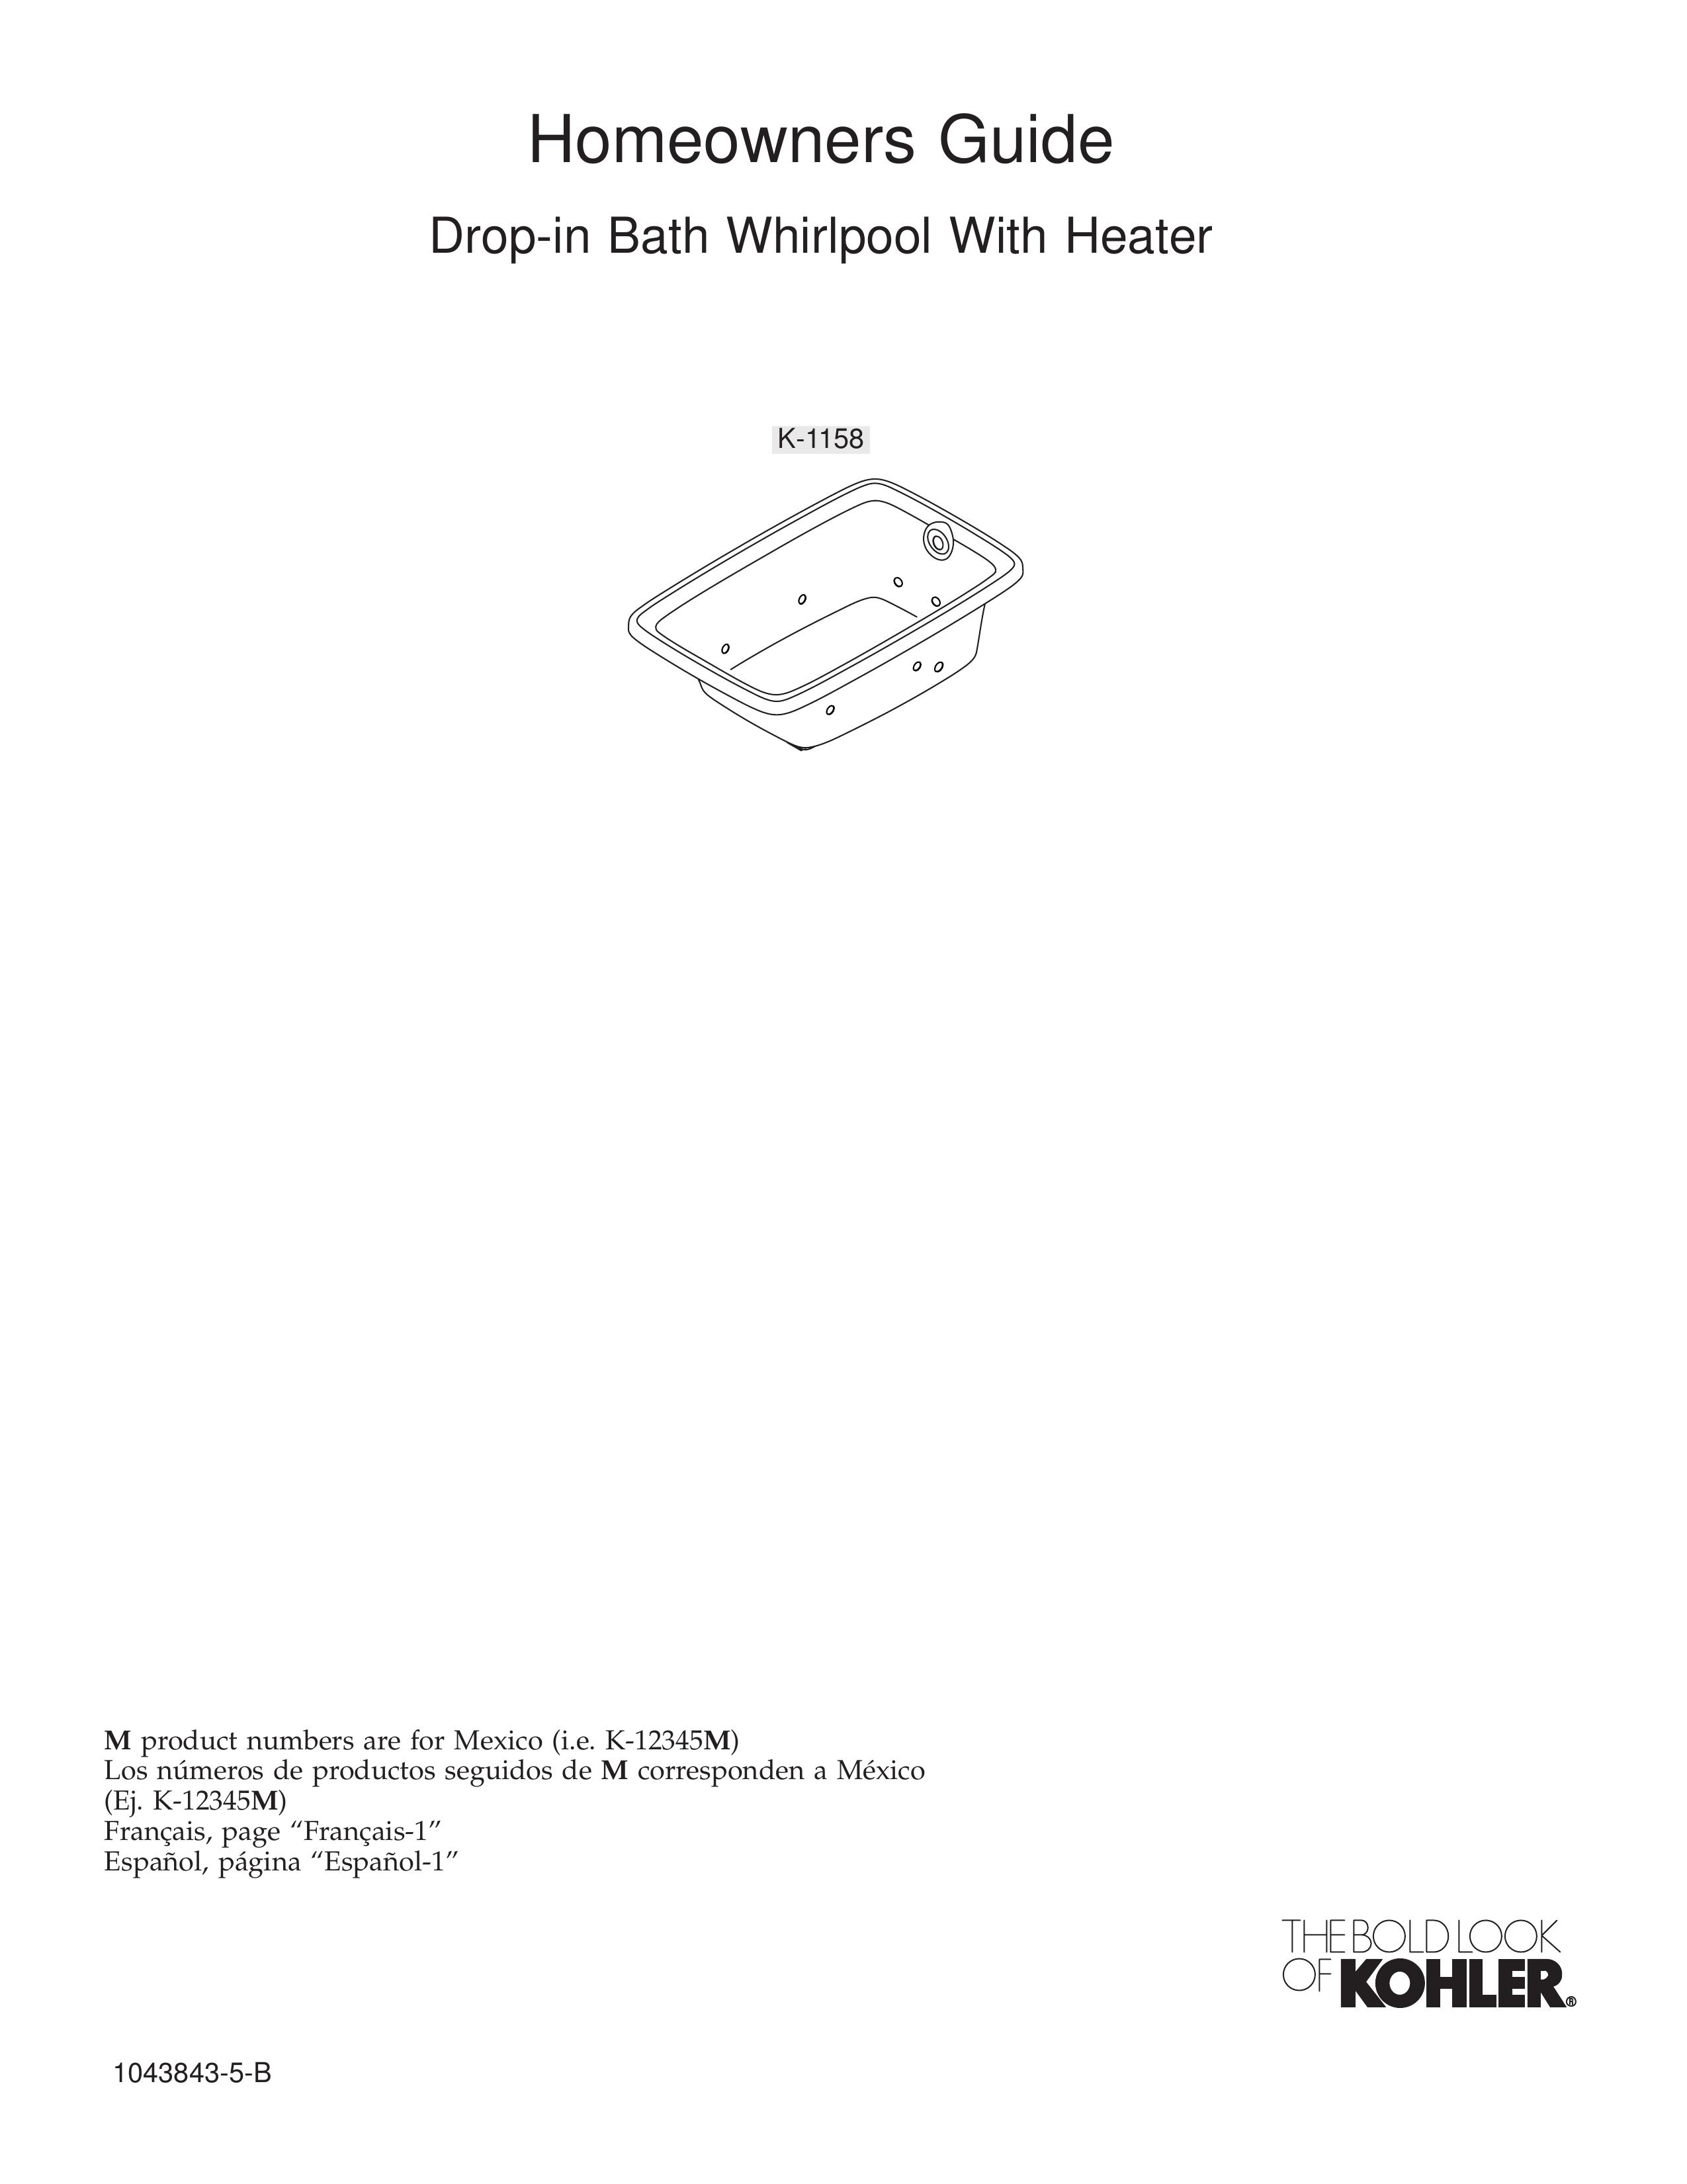 Kohler K-1158 Hot Tub User Manual